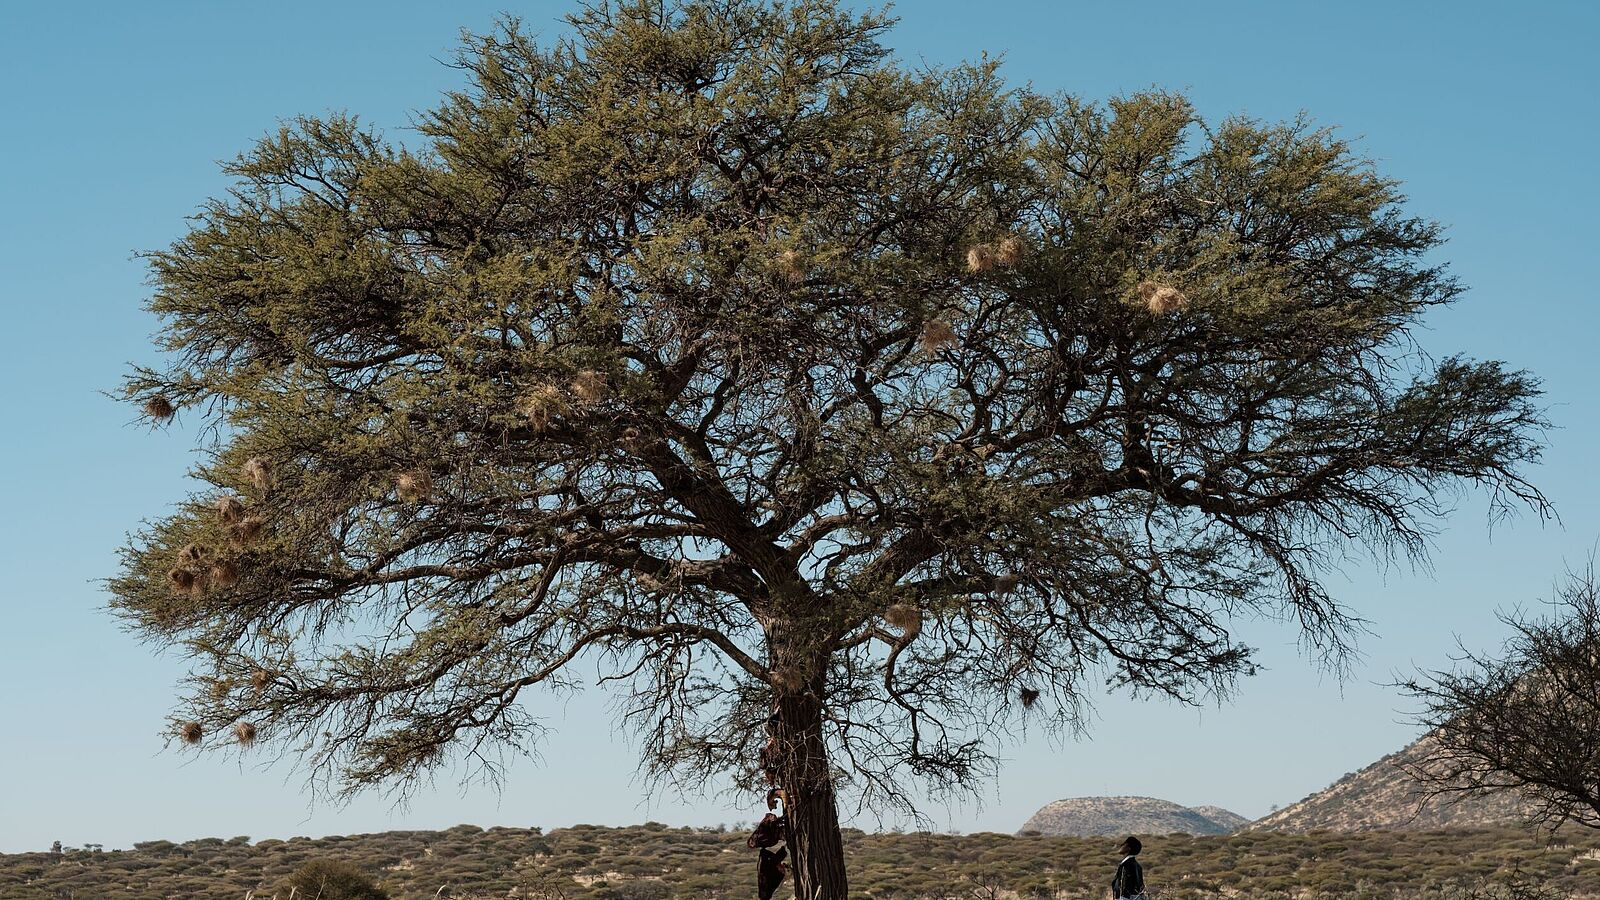 Filmstill From Perivi Katjavivi’s current film project The Hanging Tree. Photo credit: Perivi Katjavivi